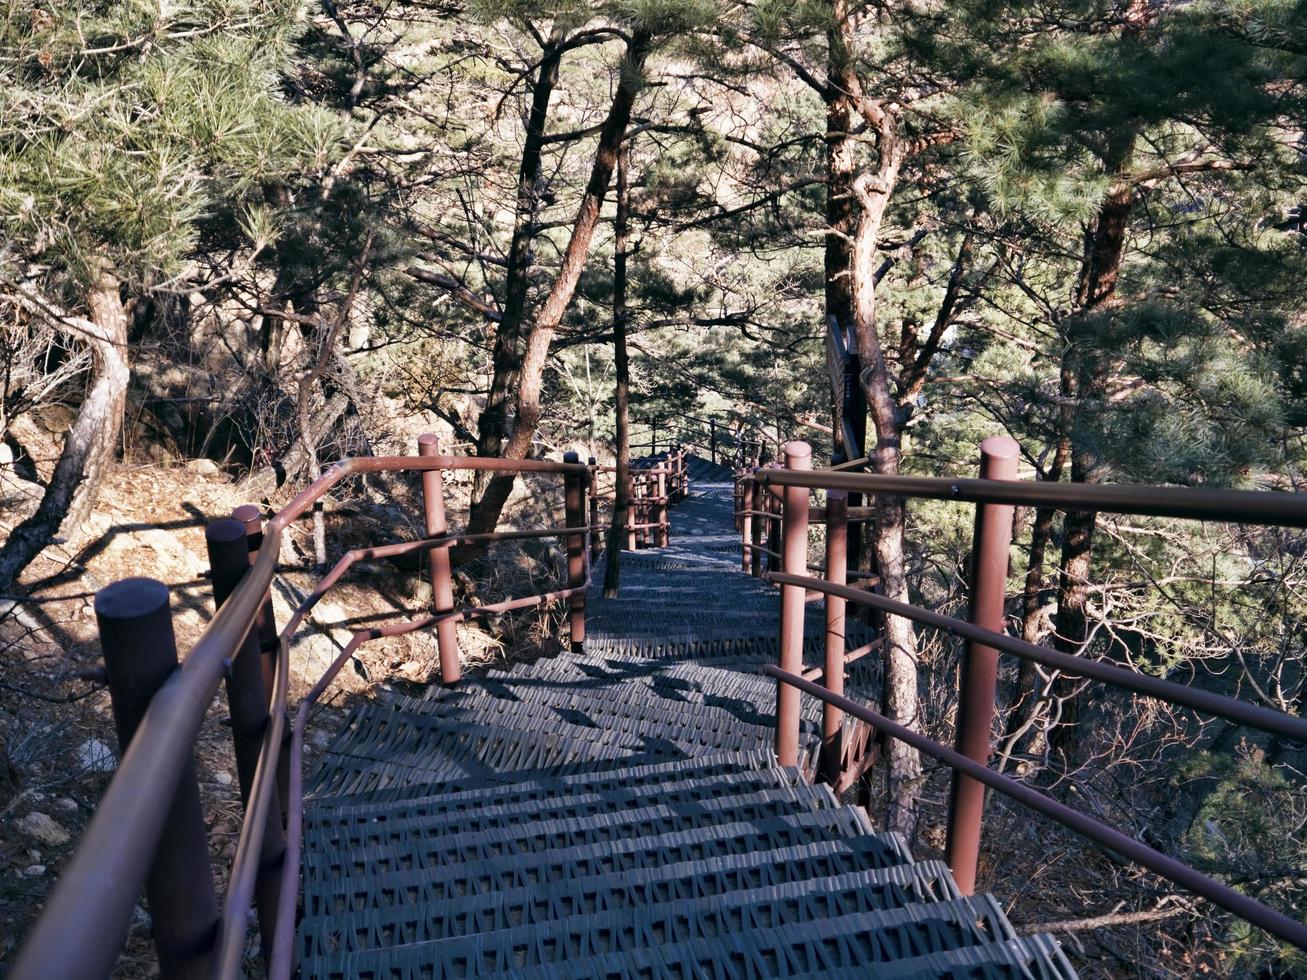 longa escadaria no parque nacional de seoraksan, coreia do sul foto